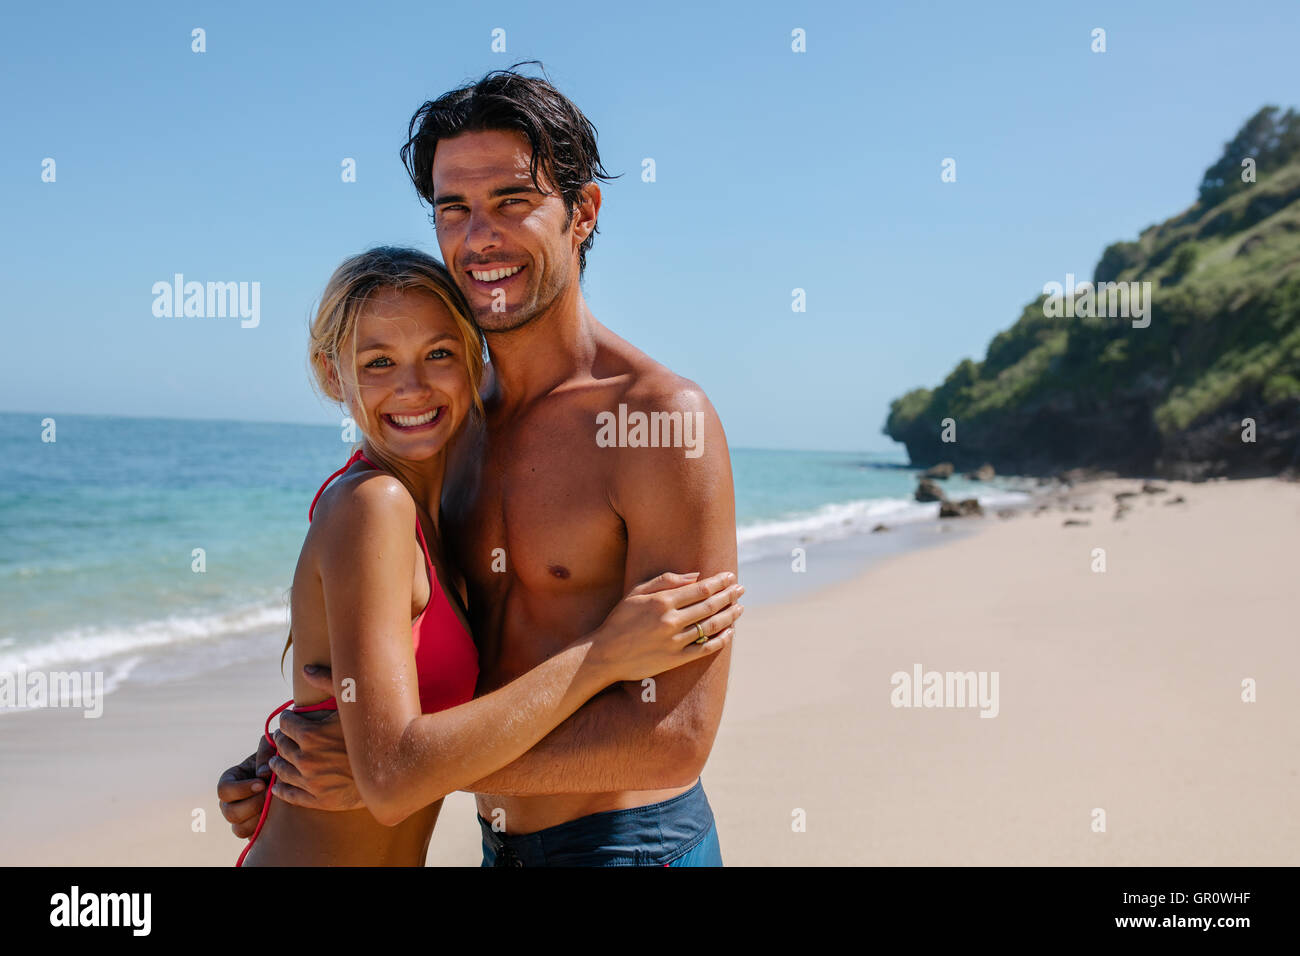 Porträt der fröhliche junge Paar zusammen am Strand stehen. Mann und Frau am Ufer Meeres Blick in die Kamera und lächelnd. Stockfoto